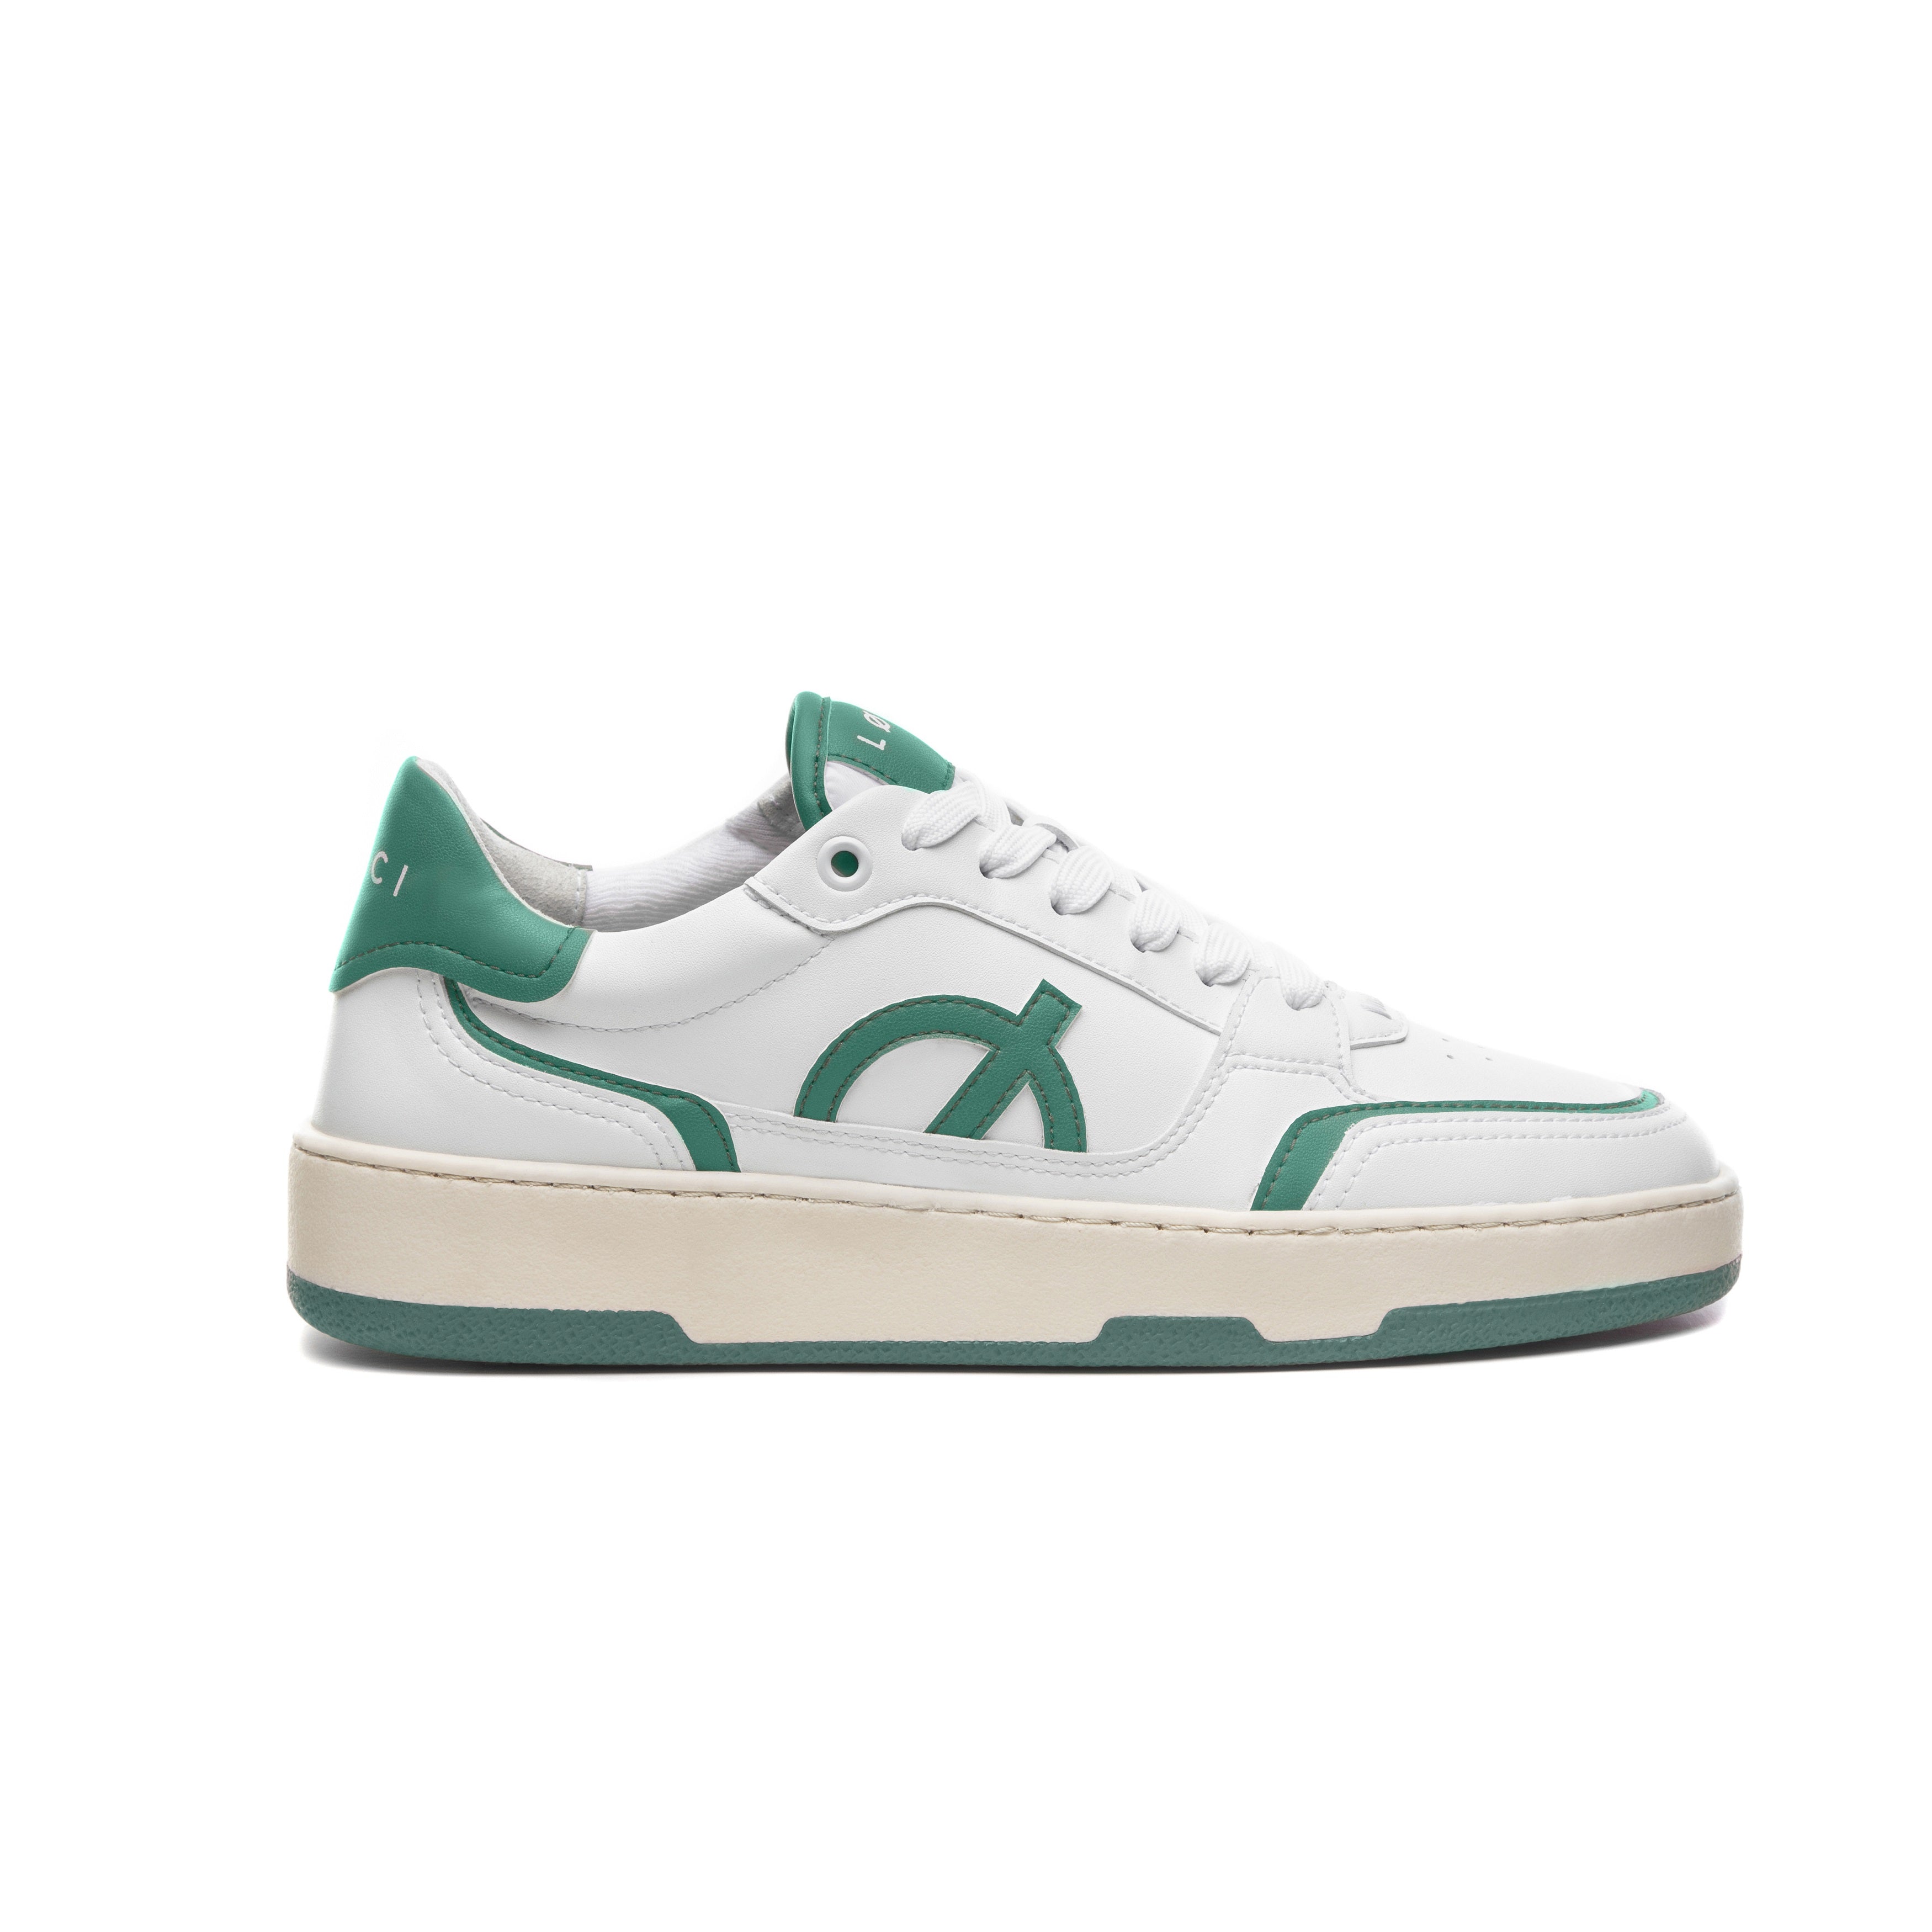 Loci Neo Sneaker White/Cream/Green 3 